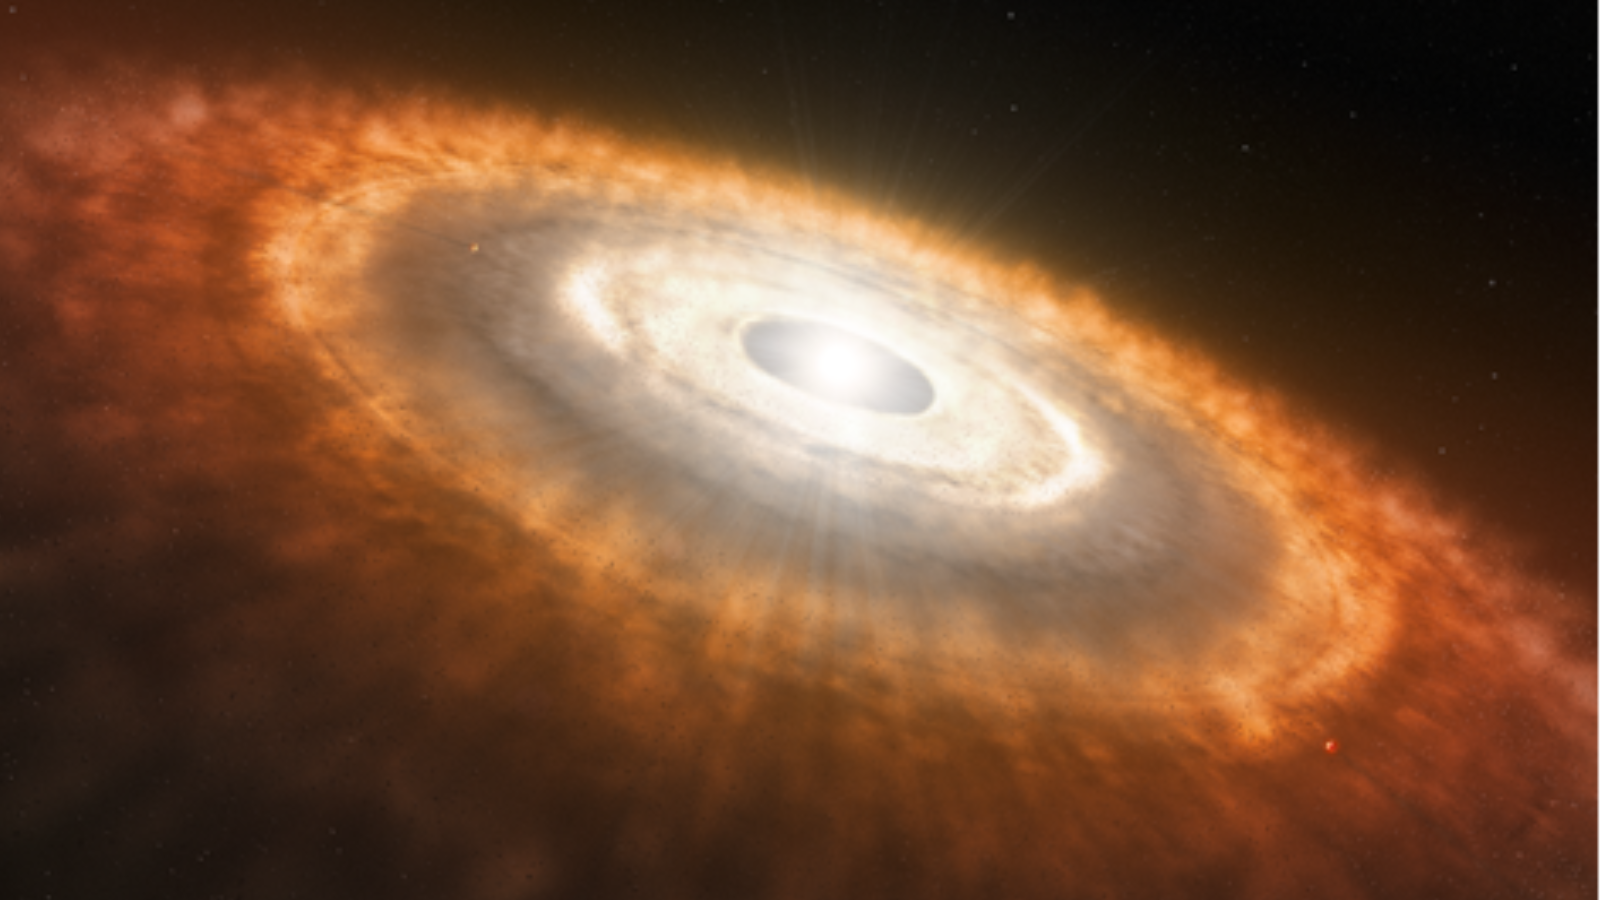 Illustration eines hellen weißen Sterns, umgeben von einem massiven Halo aus rötlichem Gas, Staub und anderen Objekten.